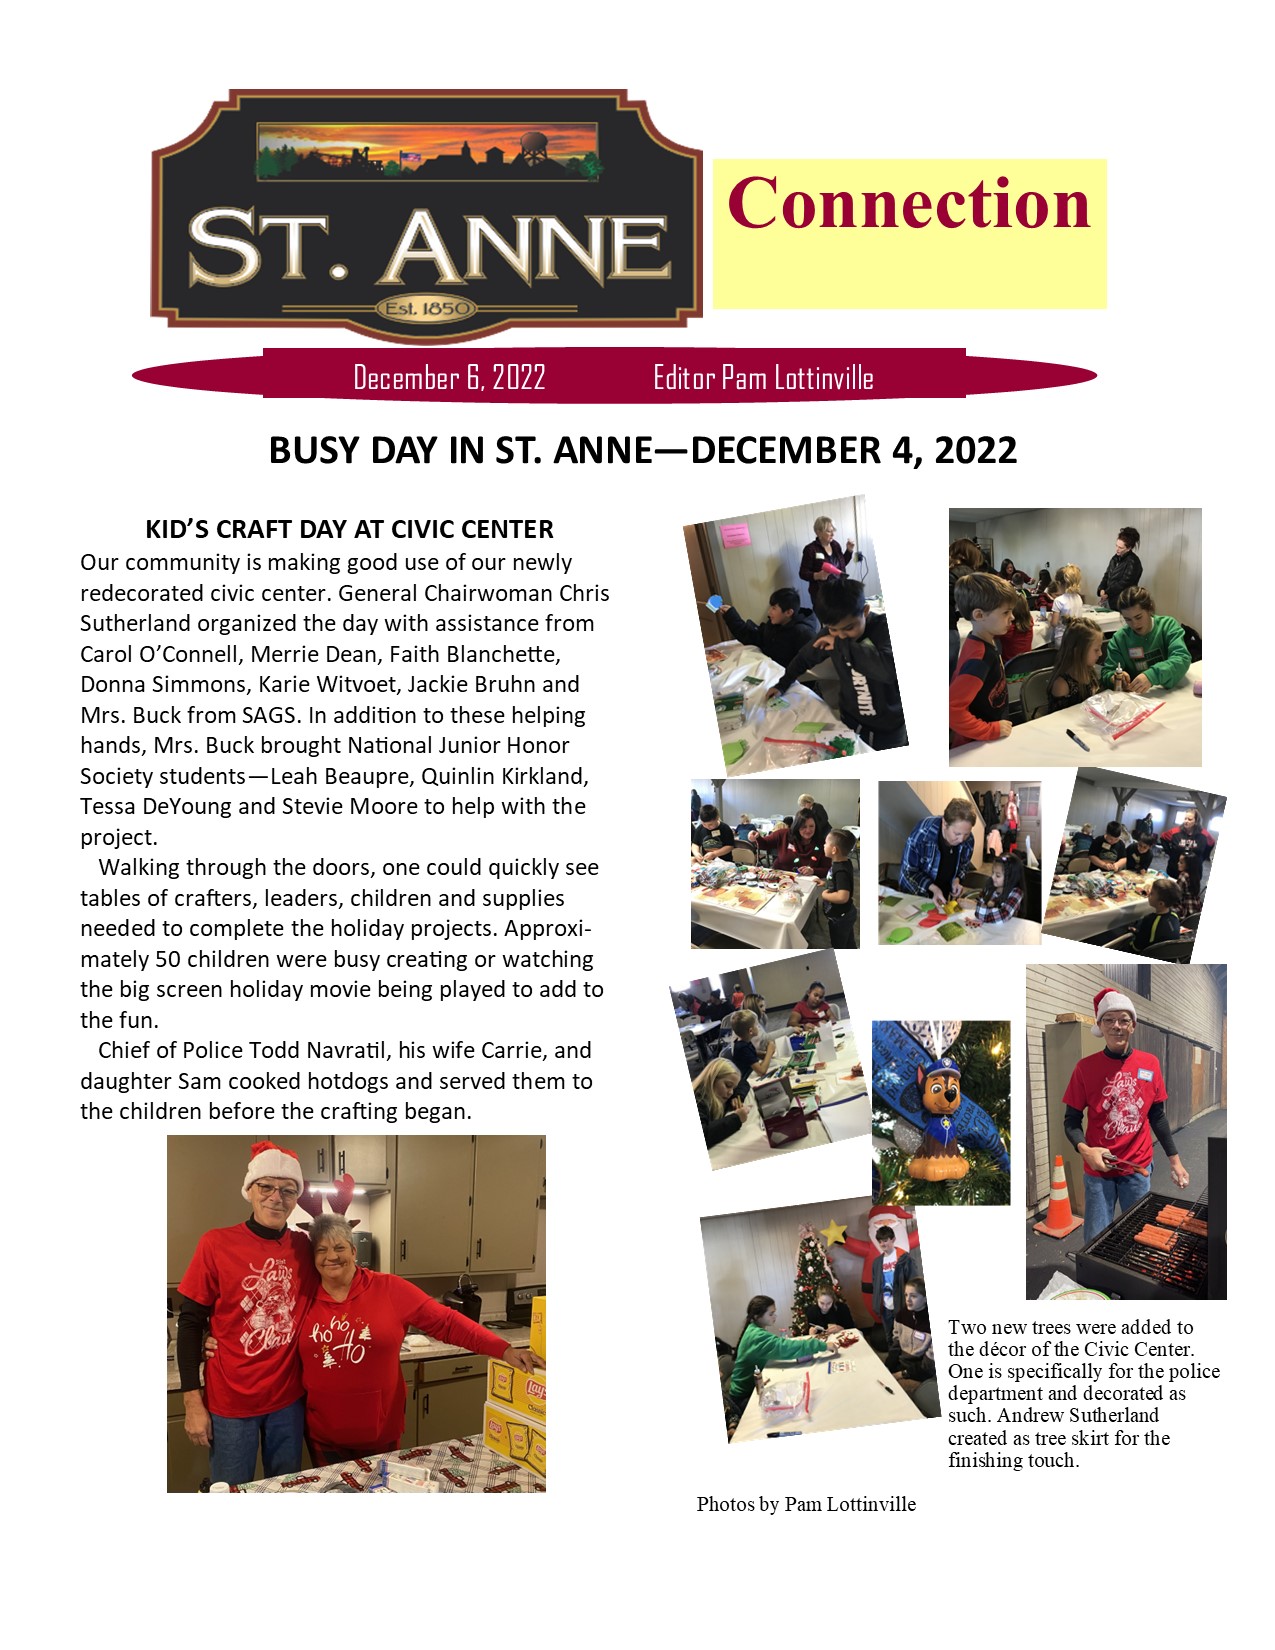 Connections, Dec 6th, 2022 Village of St. Anne, IL